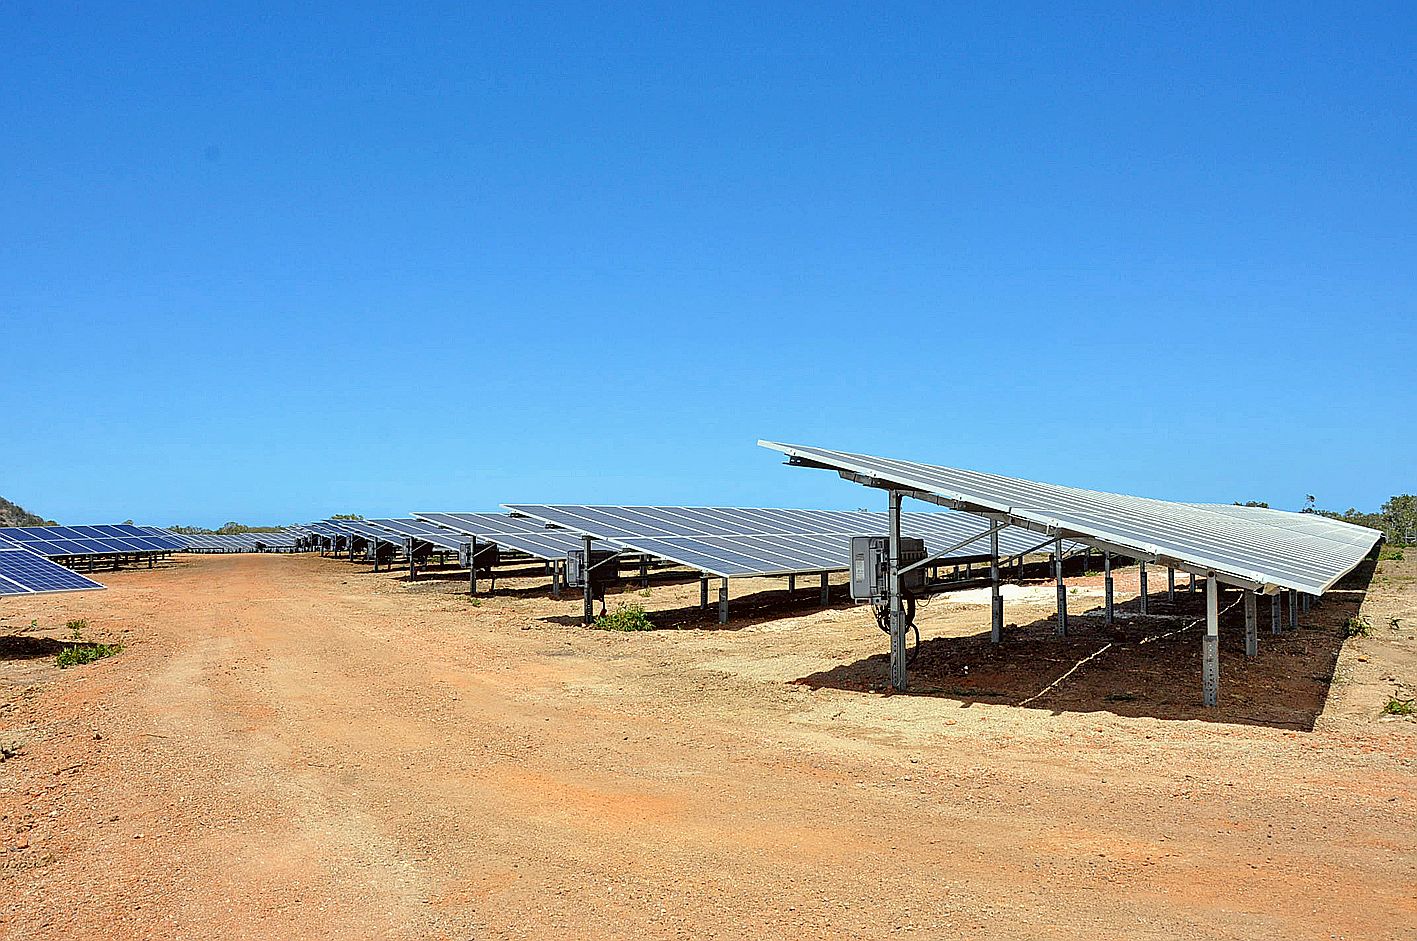 Plus de 10 000 panneaux solaires sont répartis sur une parcelle communale de 6 hectares, pour une production moyenne de 4 450 MWh/an soit la consommation de 2 800 foyers.